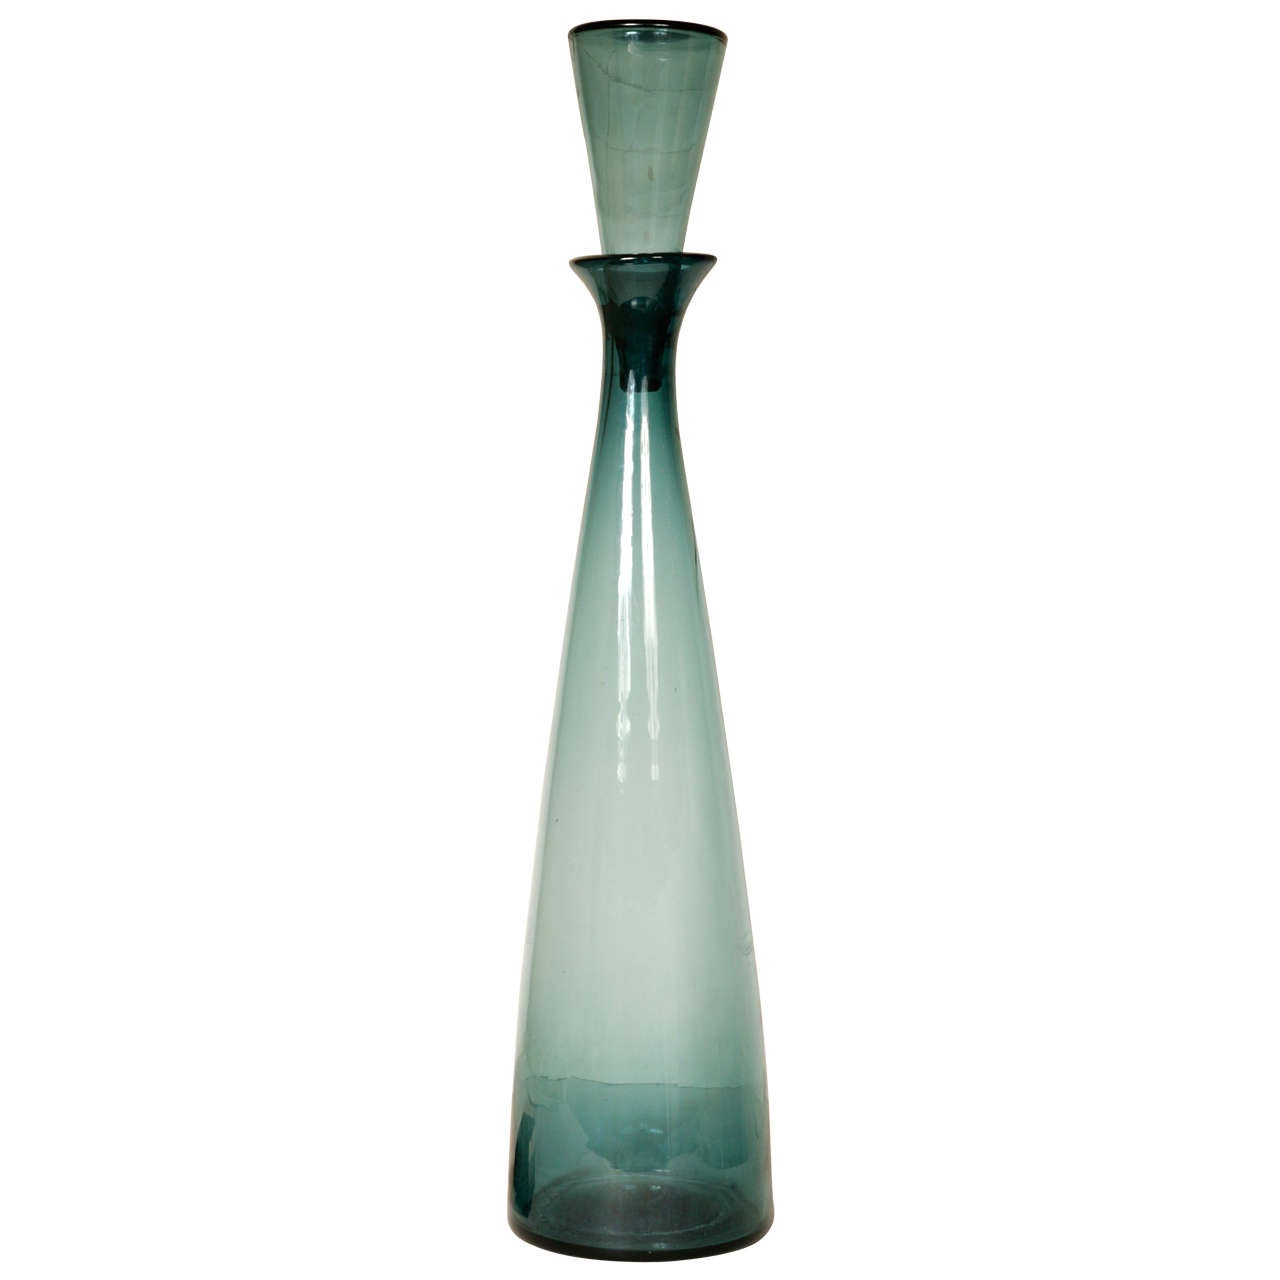 Wayne Husted "Huge" Glass Decanter or Blenco Bottle For Sale